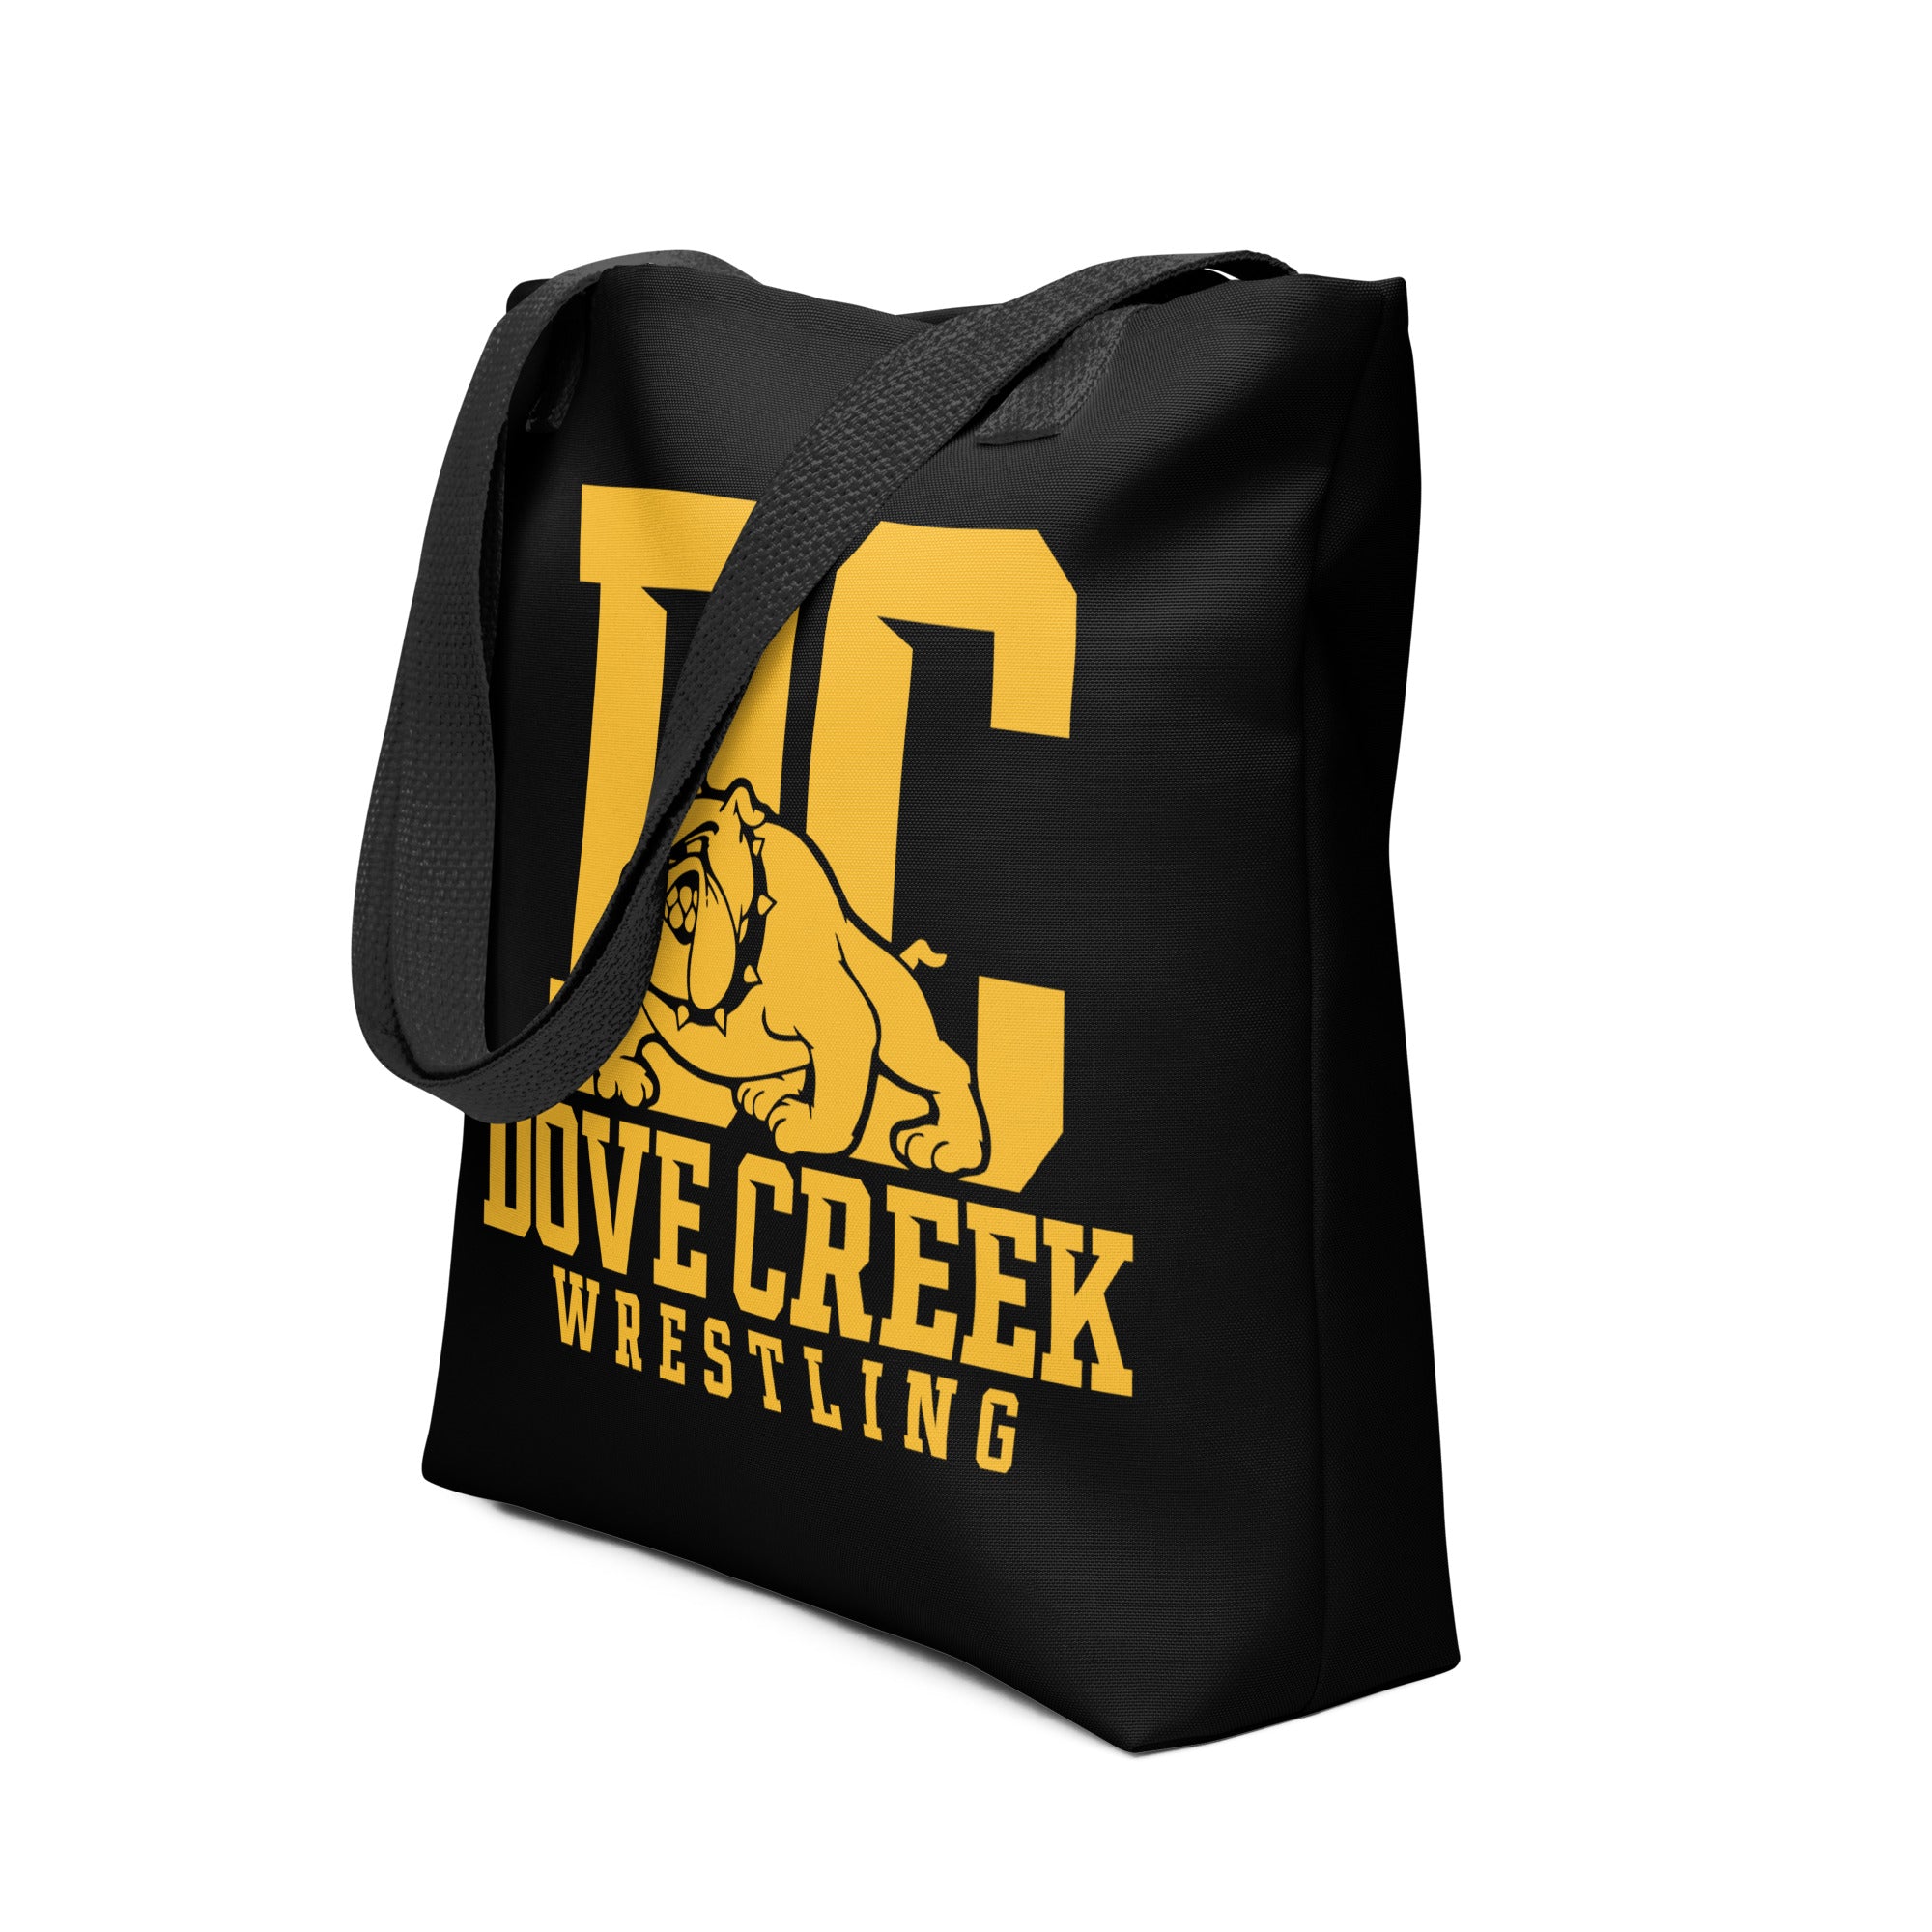 Dove Creek Wrestling 2022 All Over Print Tote